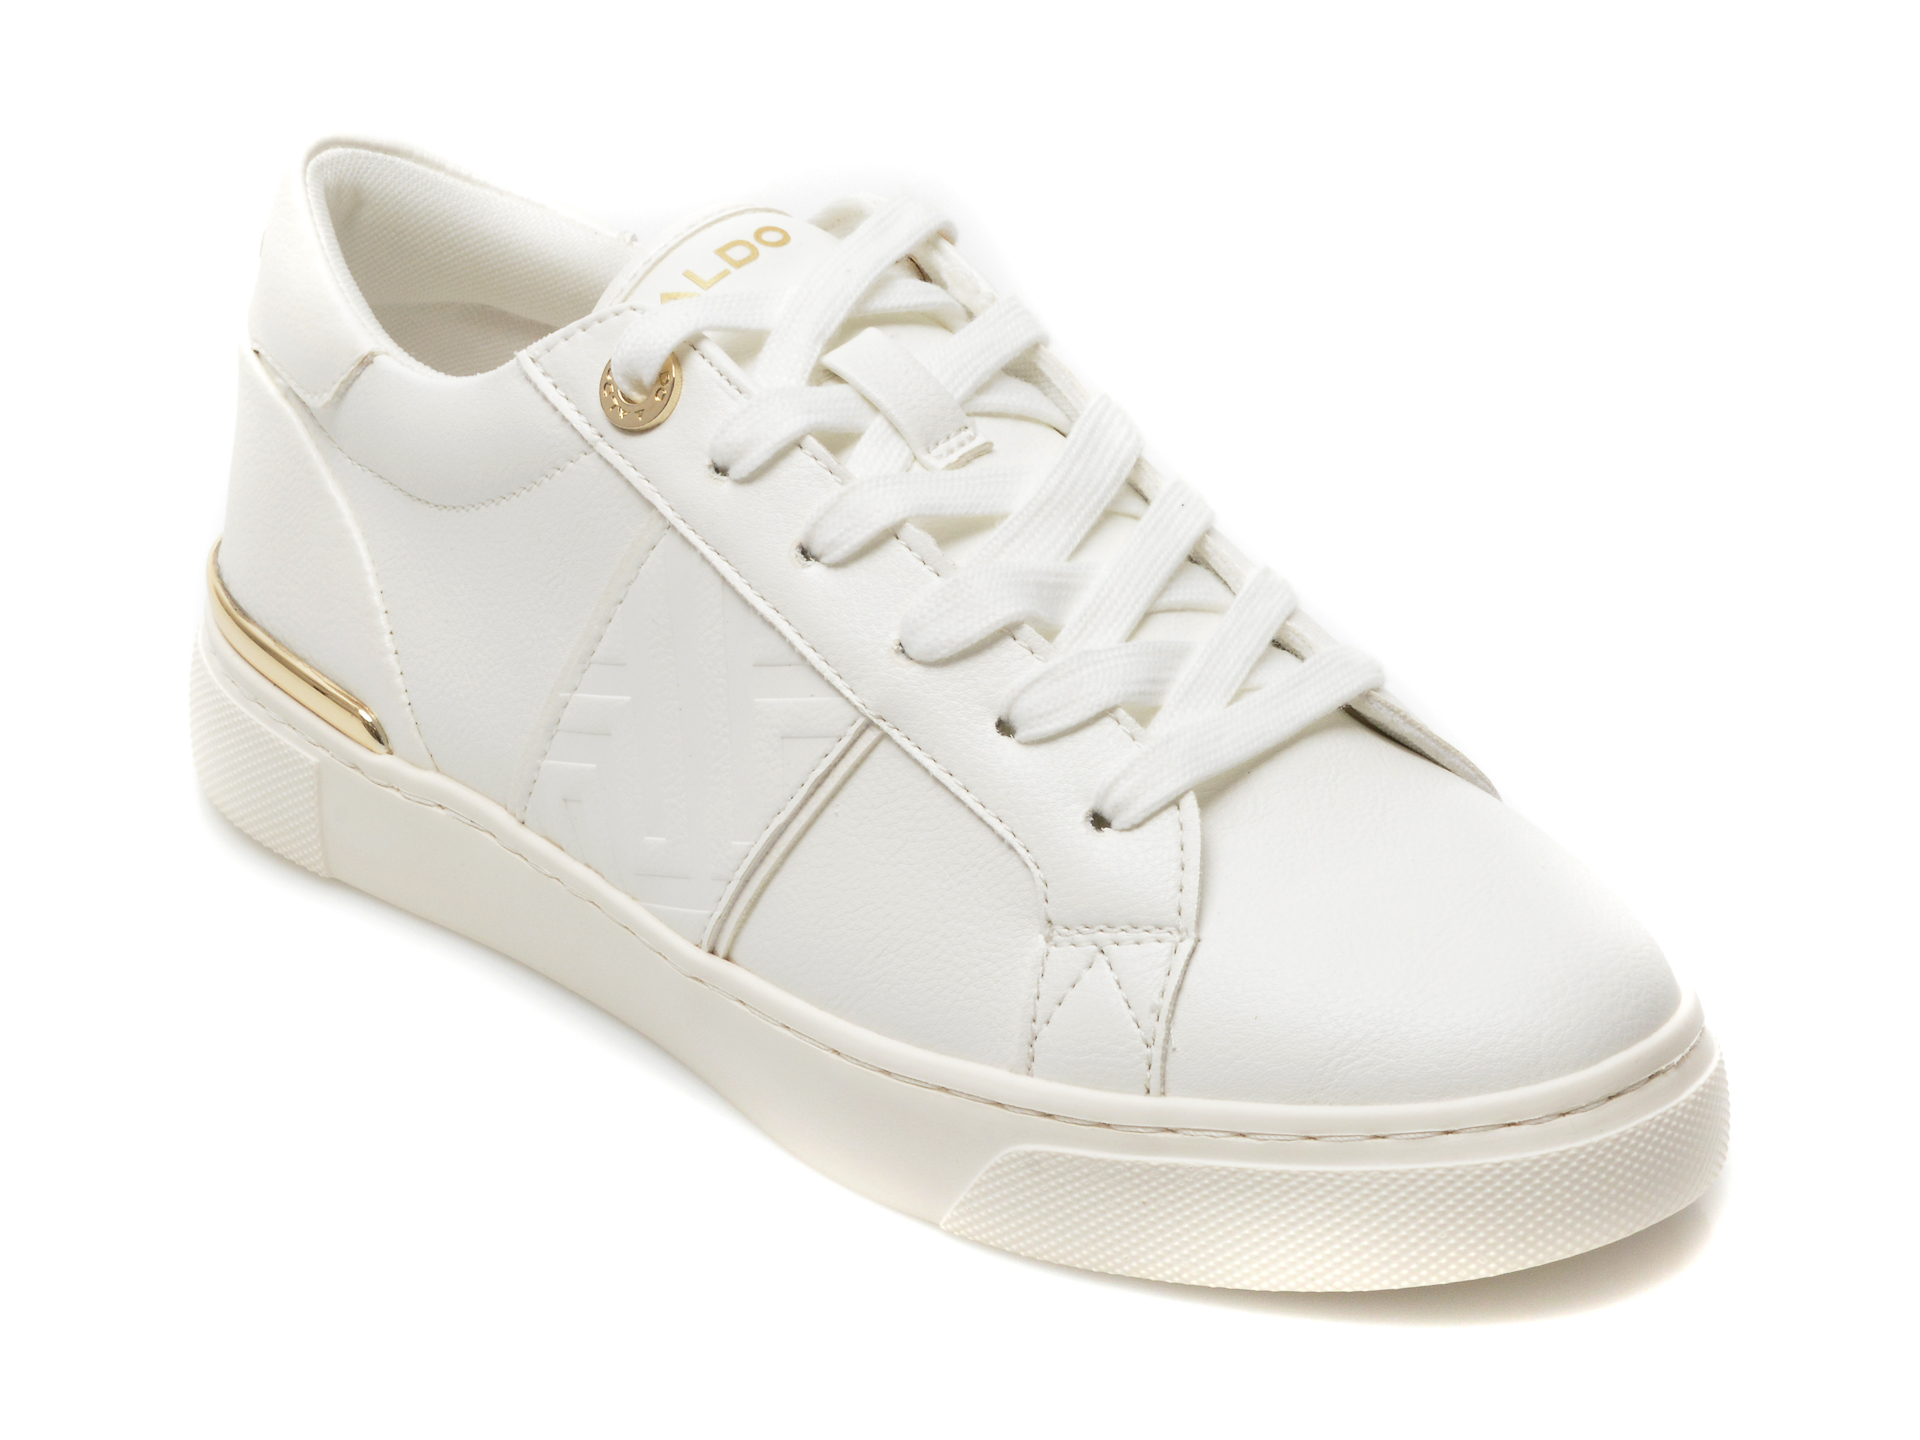 Pantofi sport ALDO albi, DAOSSI100, din piele ecologica Aldo